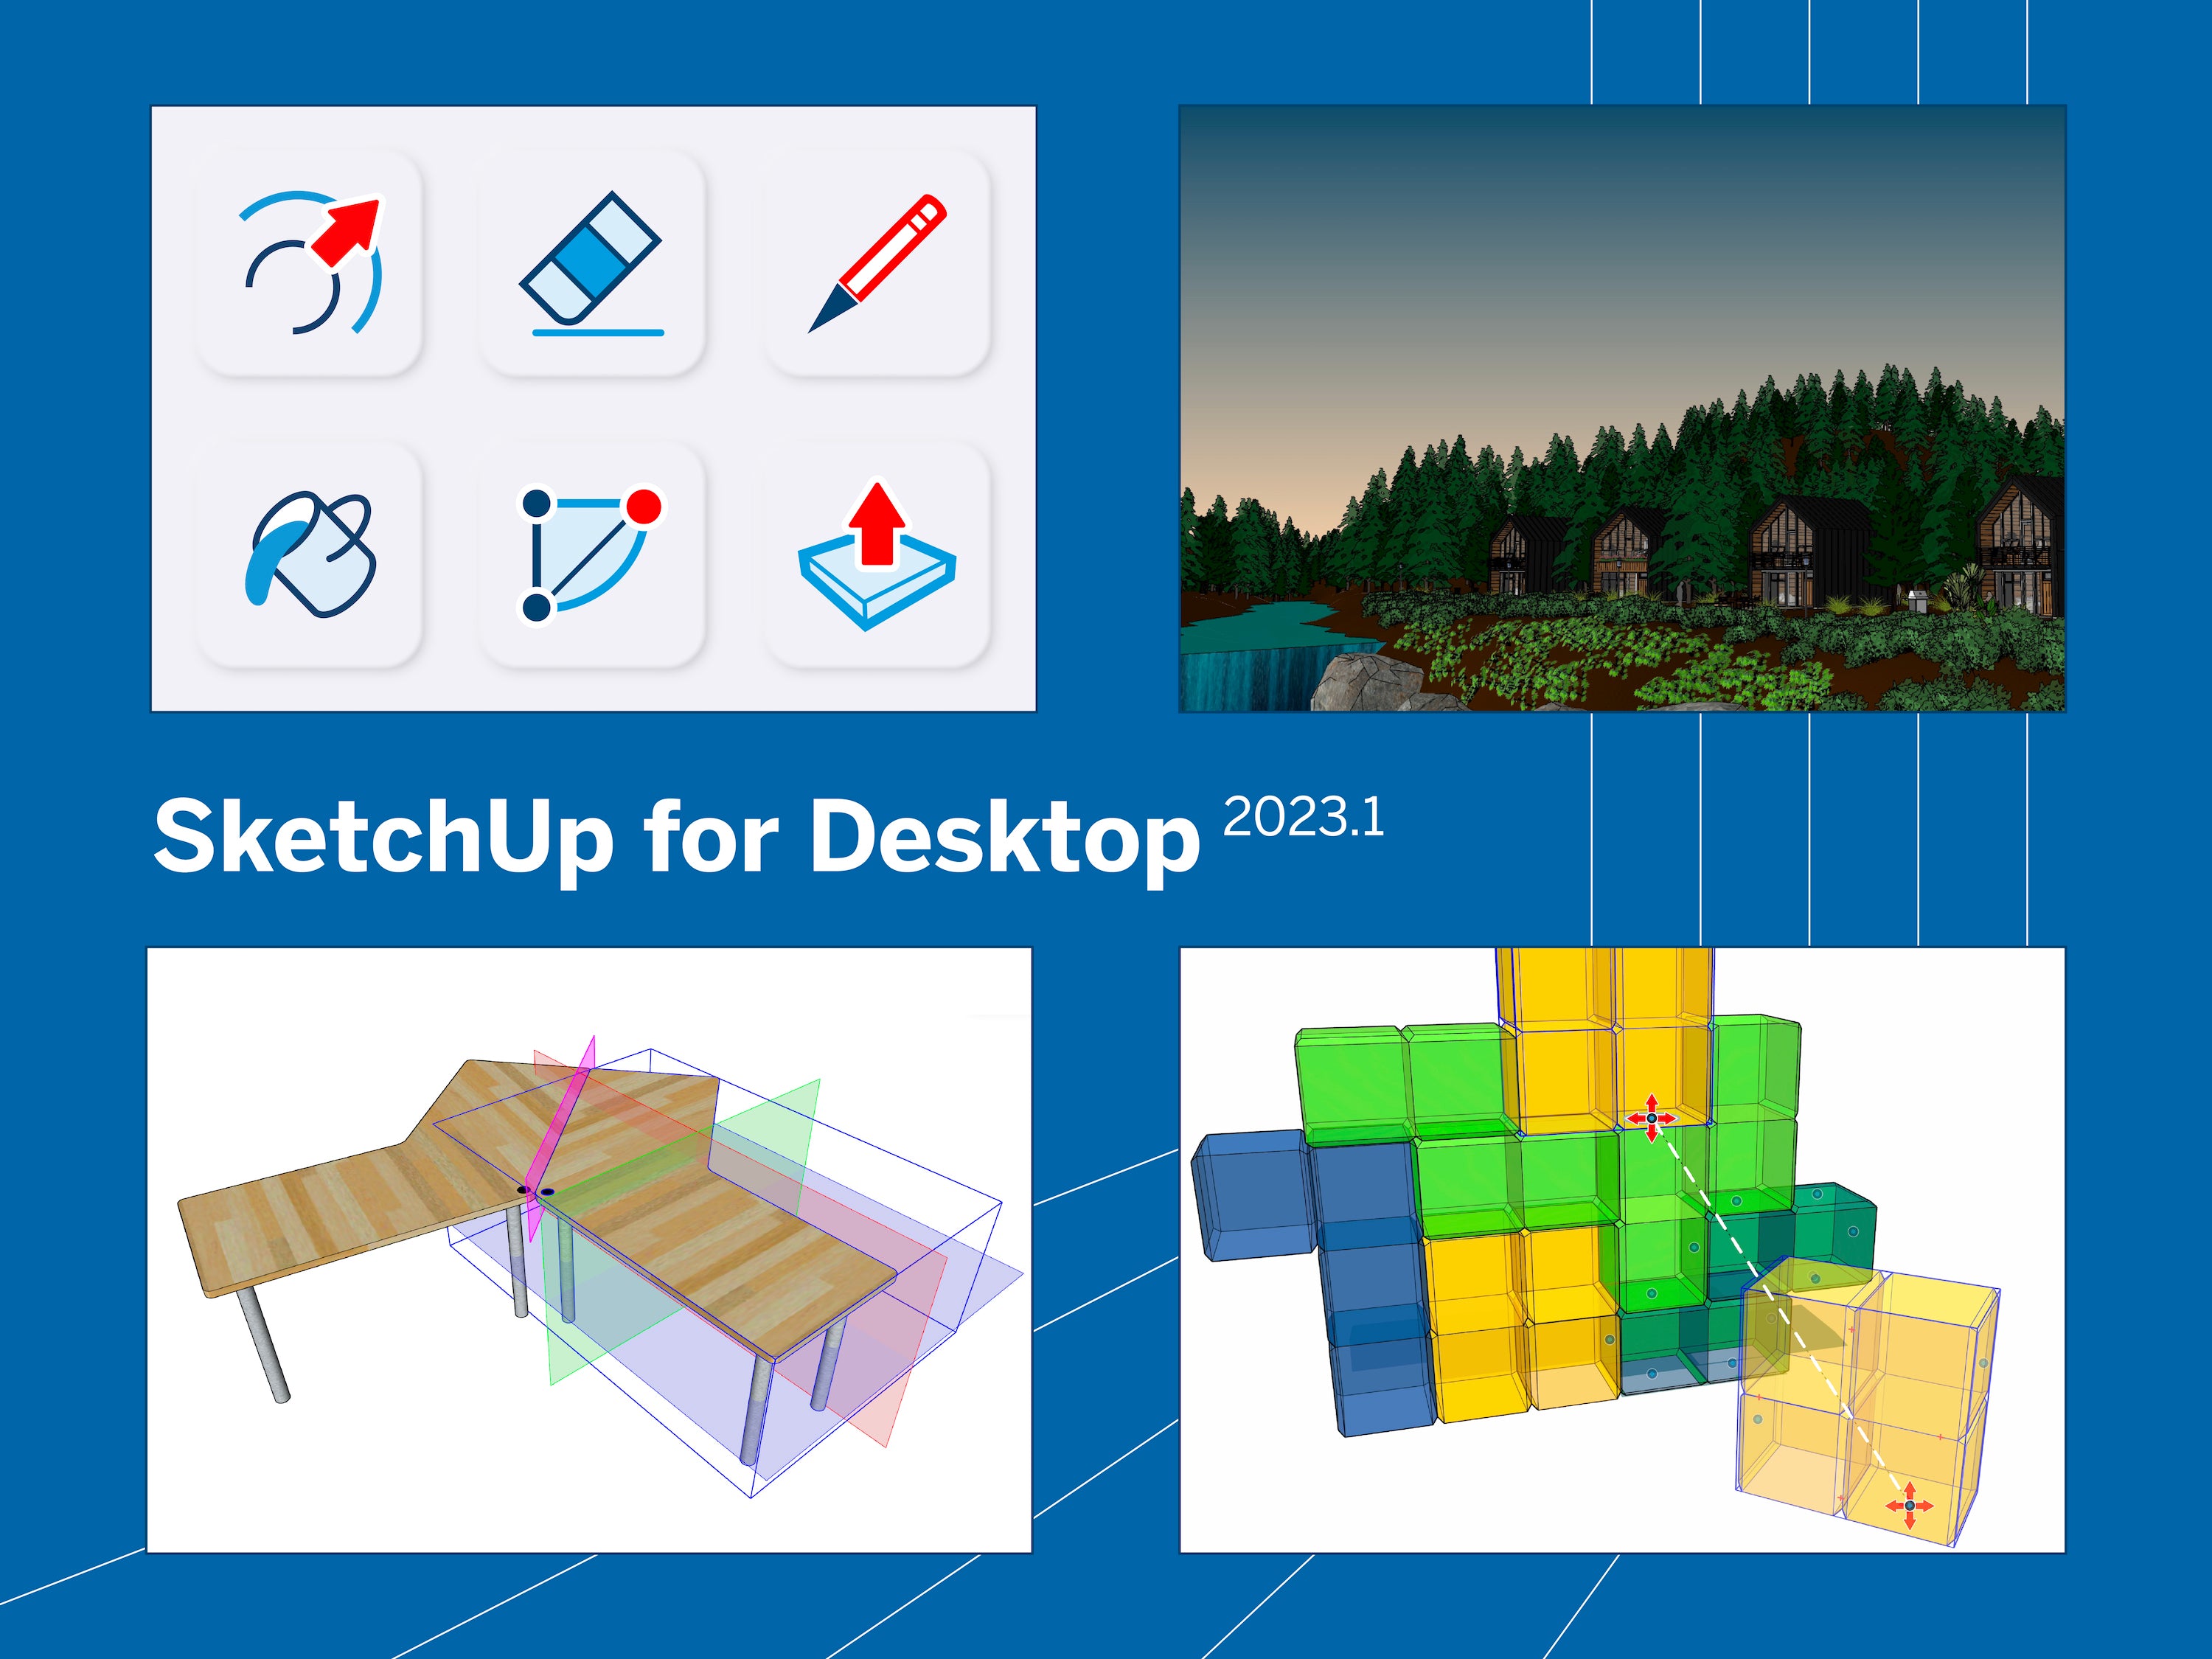 sketchup-for-desktop-2023.1